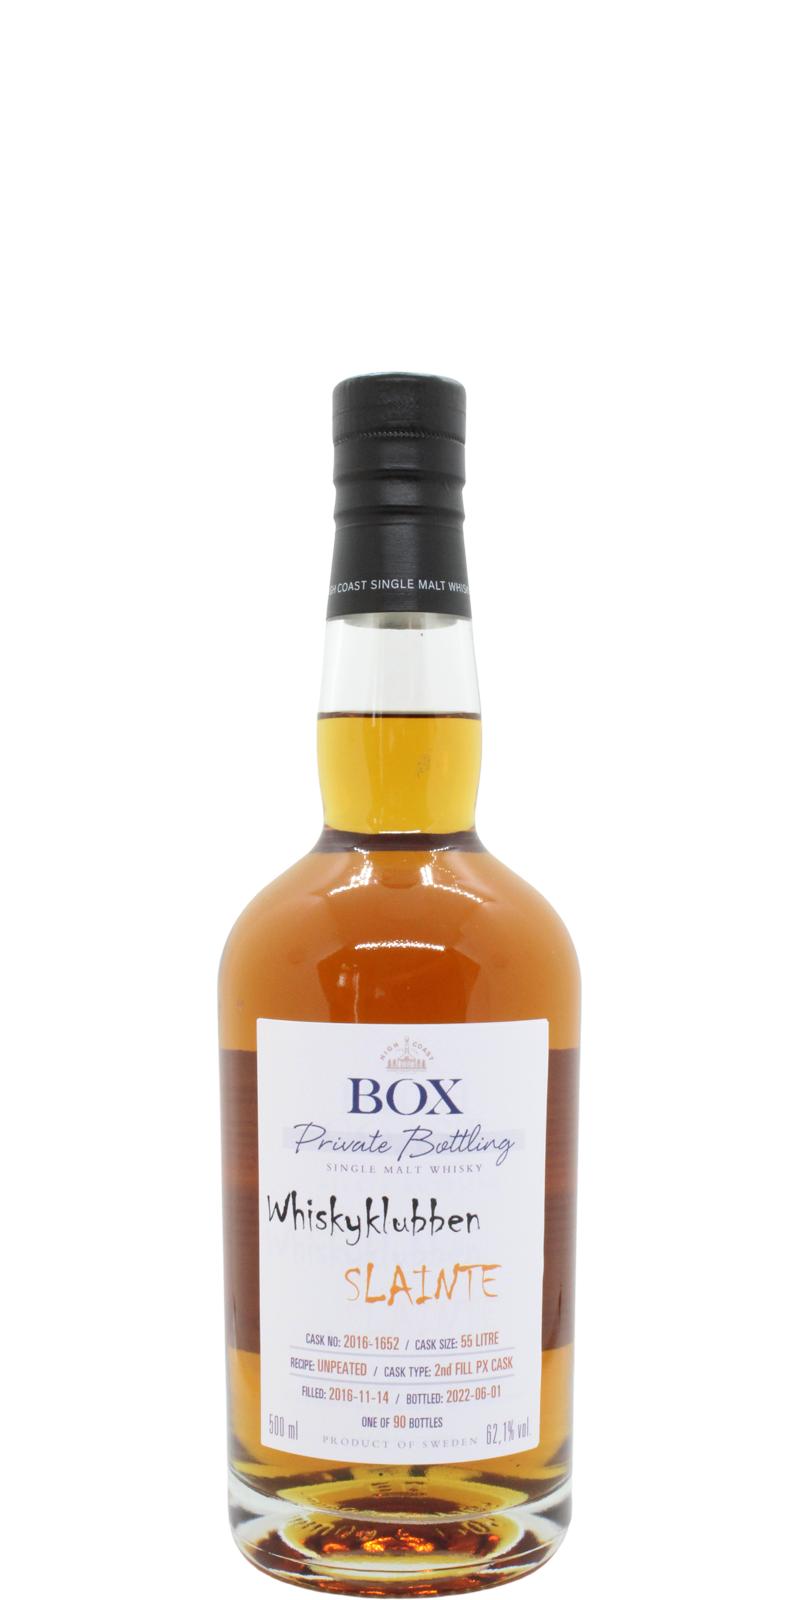 Box 2016 WSla 2nd fill PX Cask Whiskyklubben Slainte 62.1% 500ml